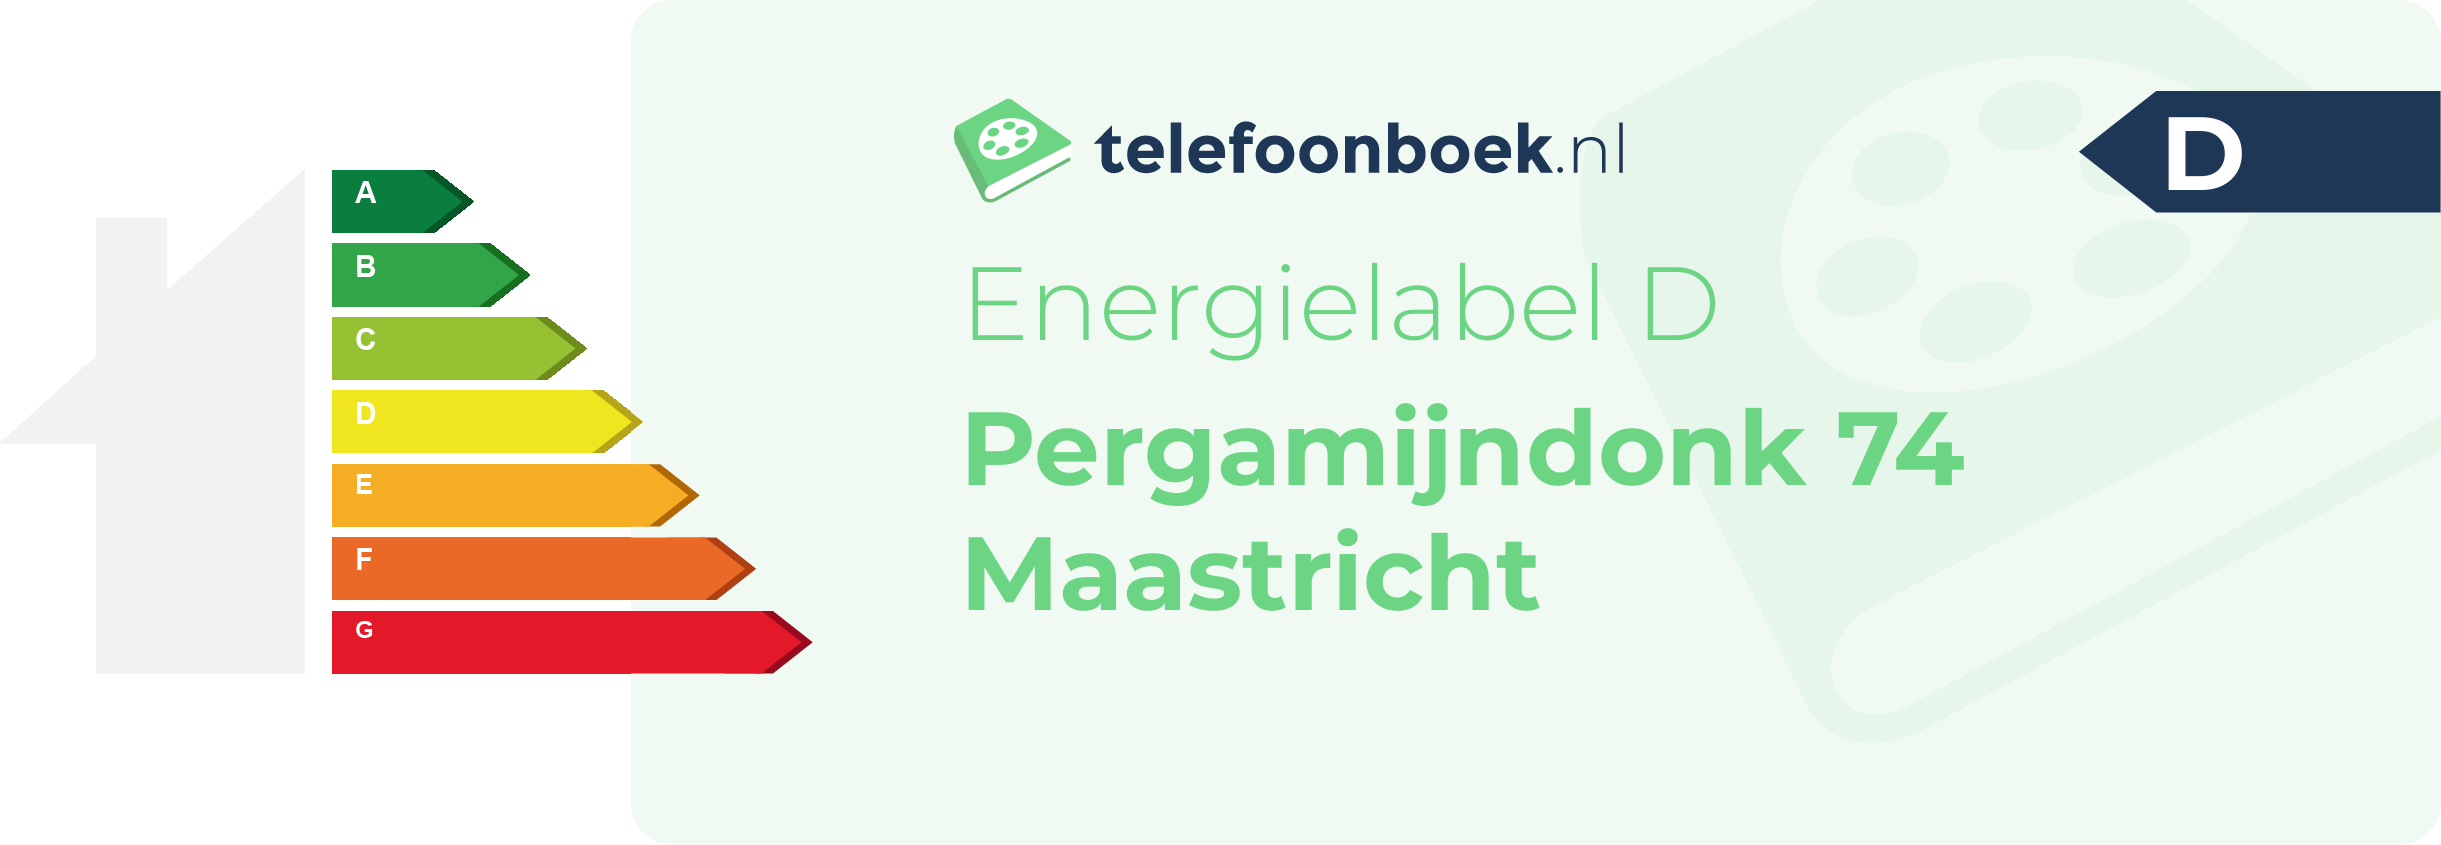 Energielabel Pergamijndonk 74 Maastricht